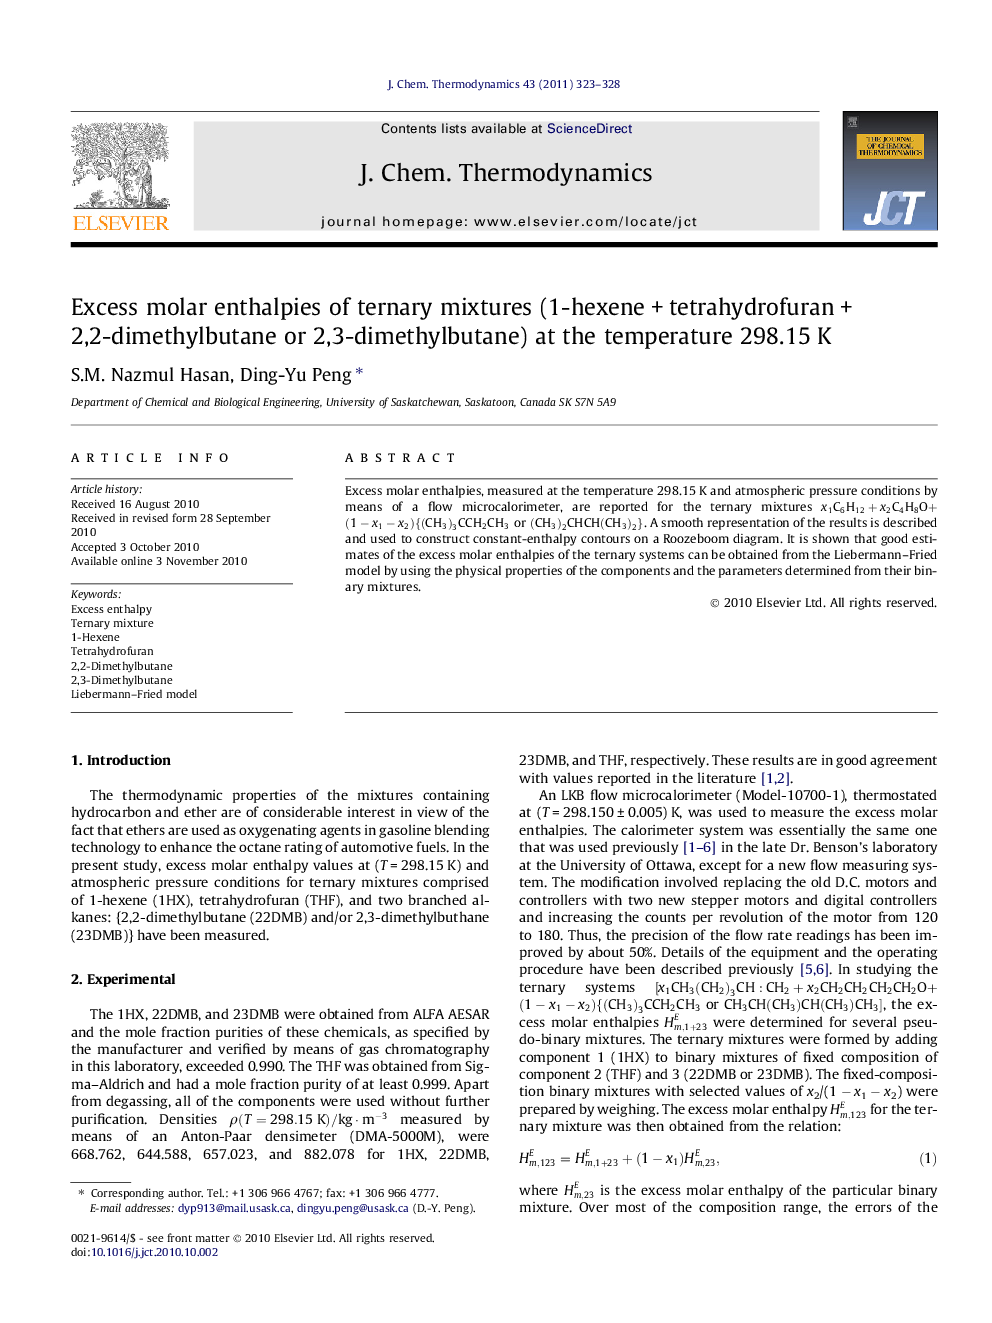 Excess molar enthalpies of ternary mixtures (1-hexeneÂ +Â tetrahydrofuranÂ +Â 2,2-dimethylbutane or 2,3-dimethylbutane) at the temperature 298.15Â K